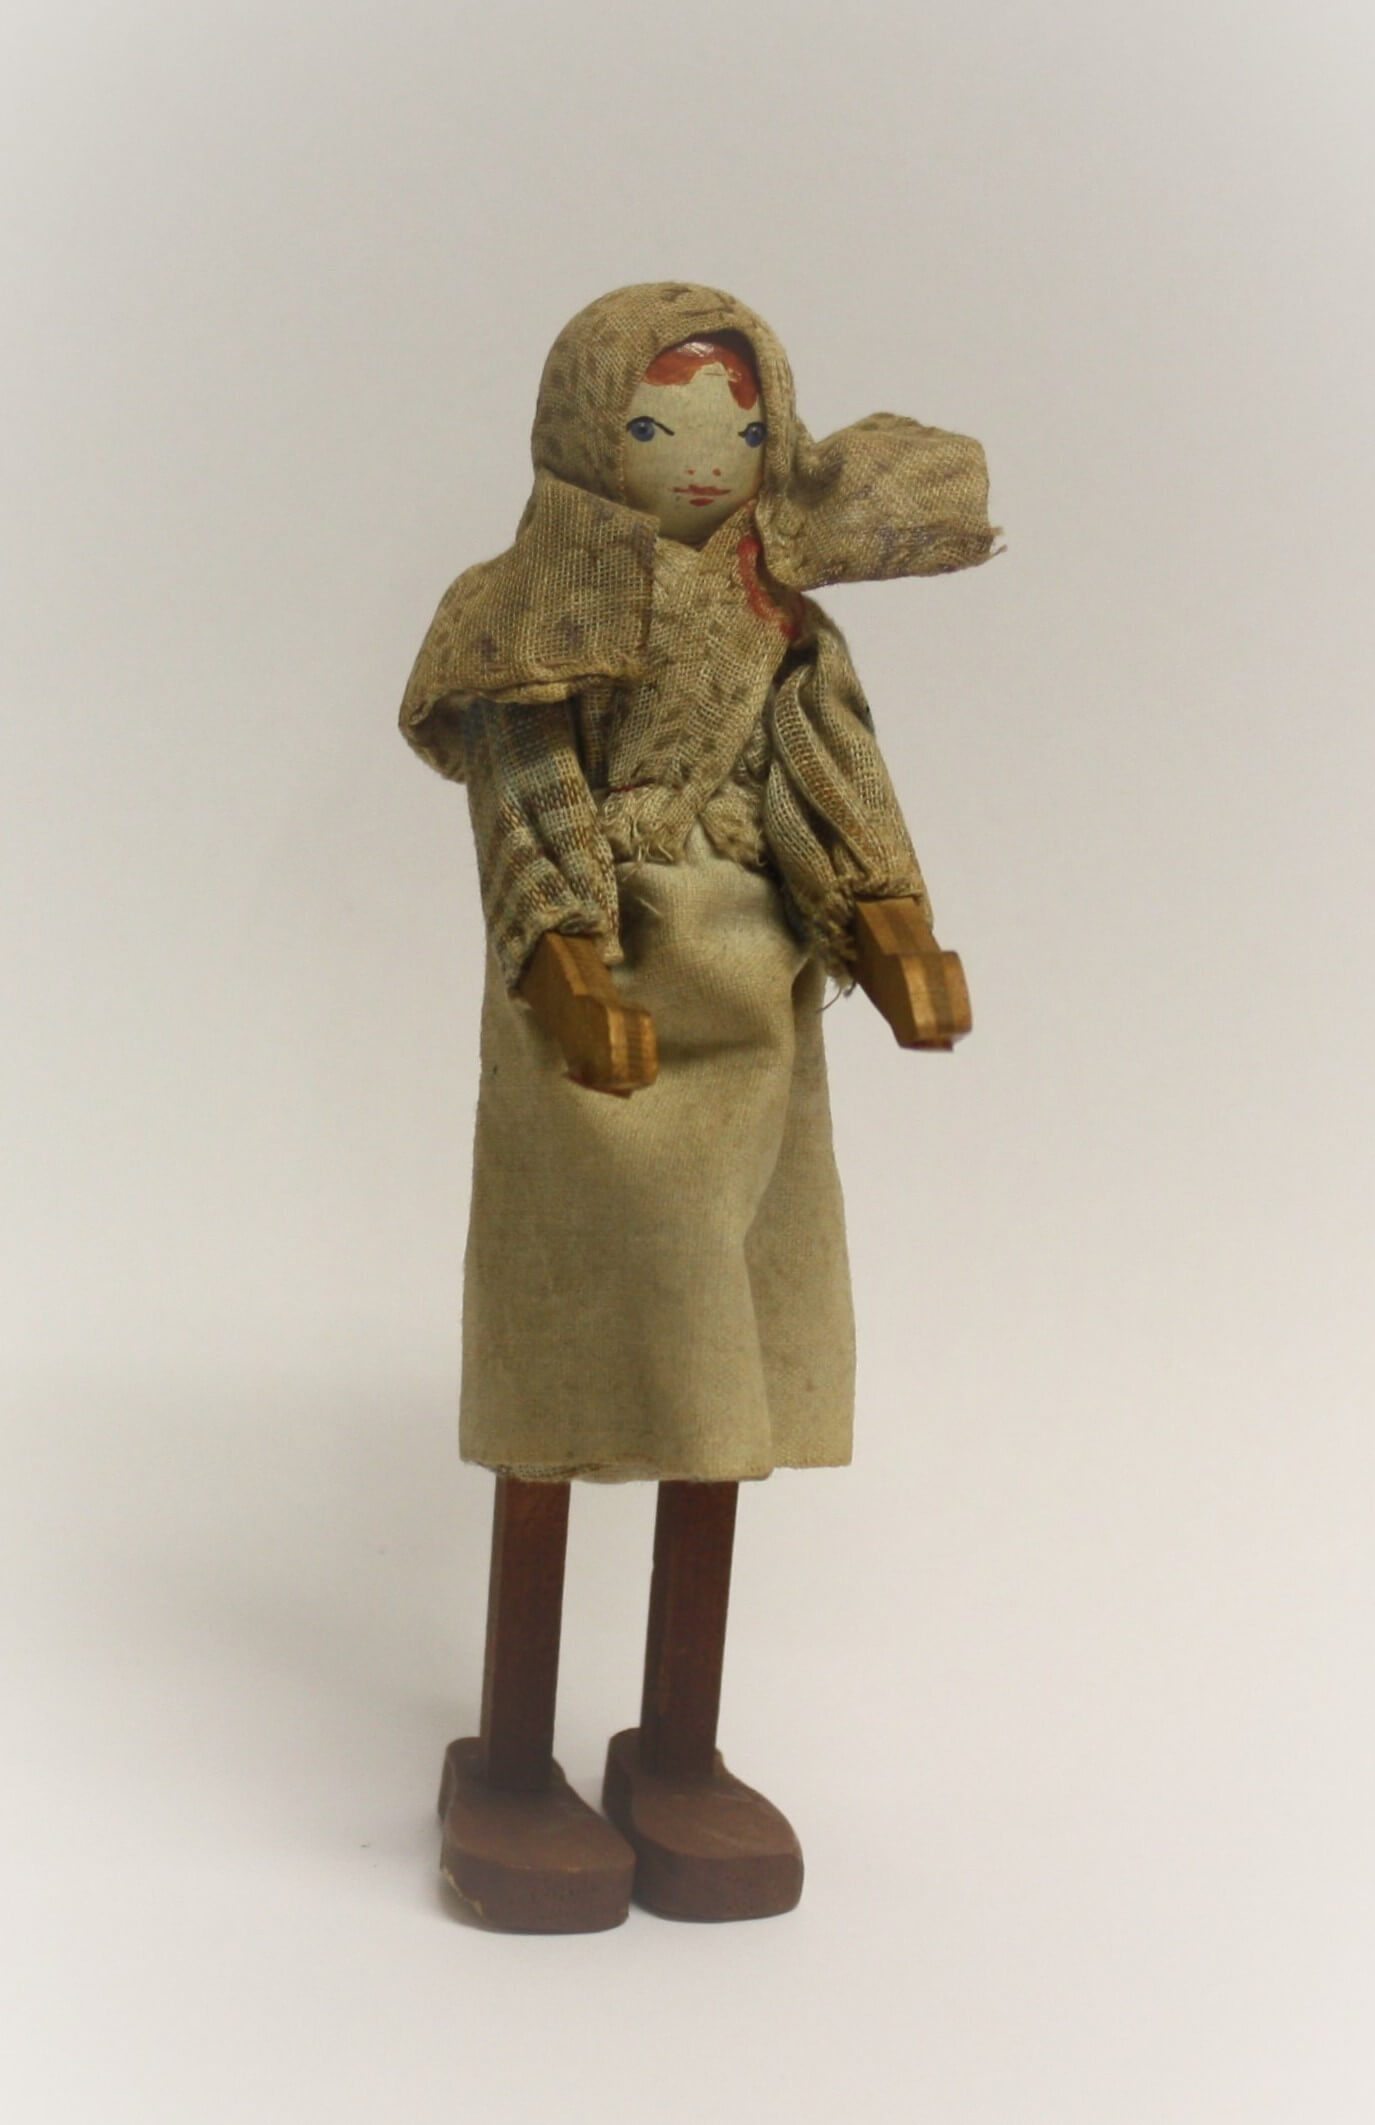 Peg wooden doll - Wikipedia